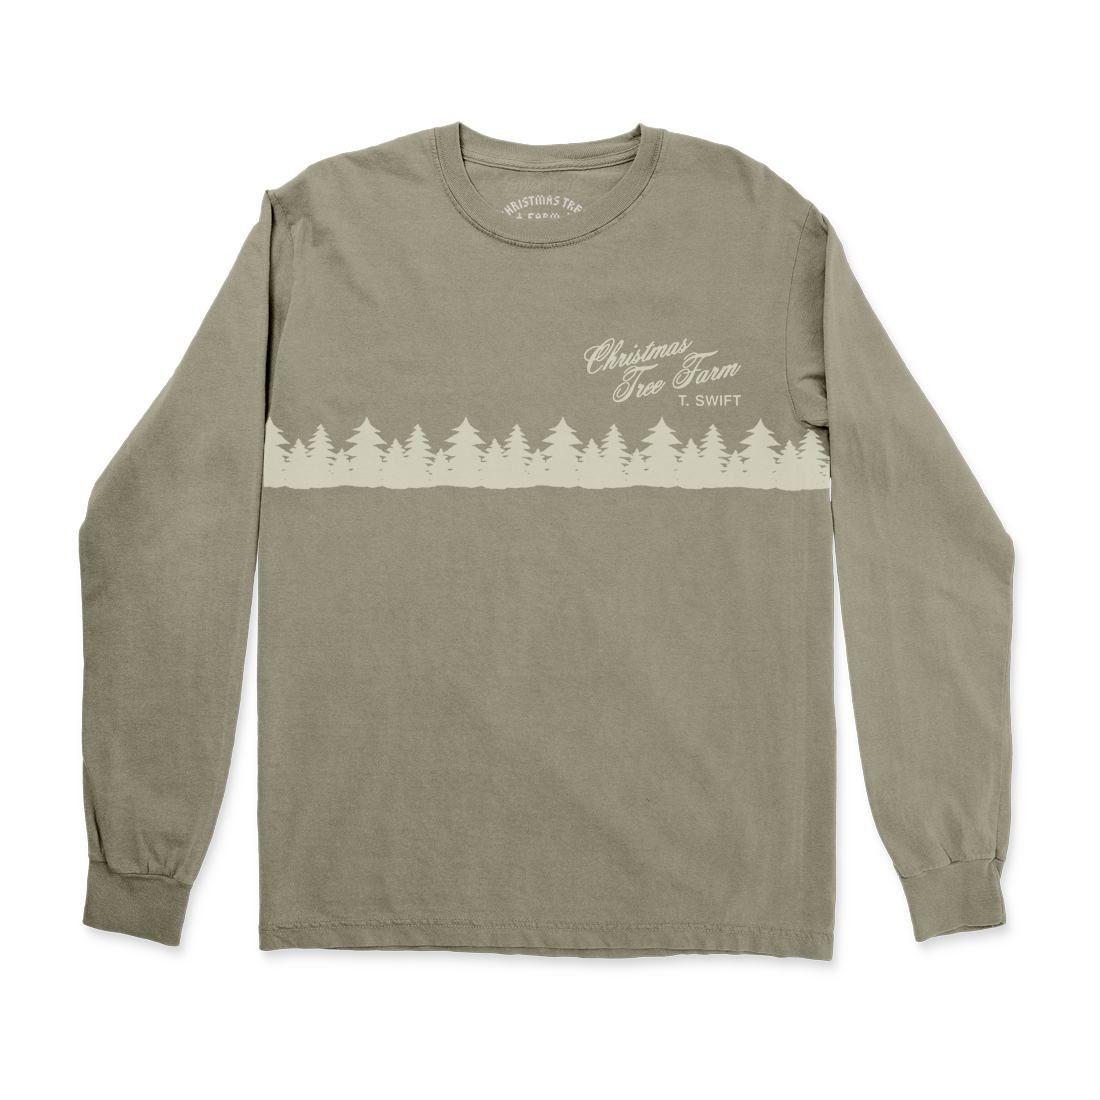 Christmas Tree Farm Long Sleeve T-shirt